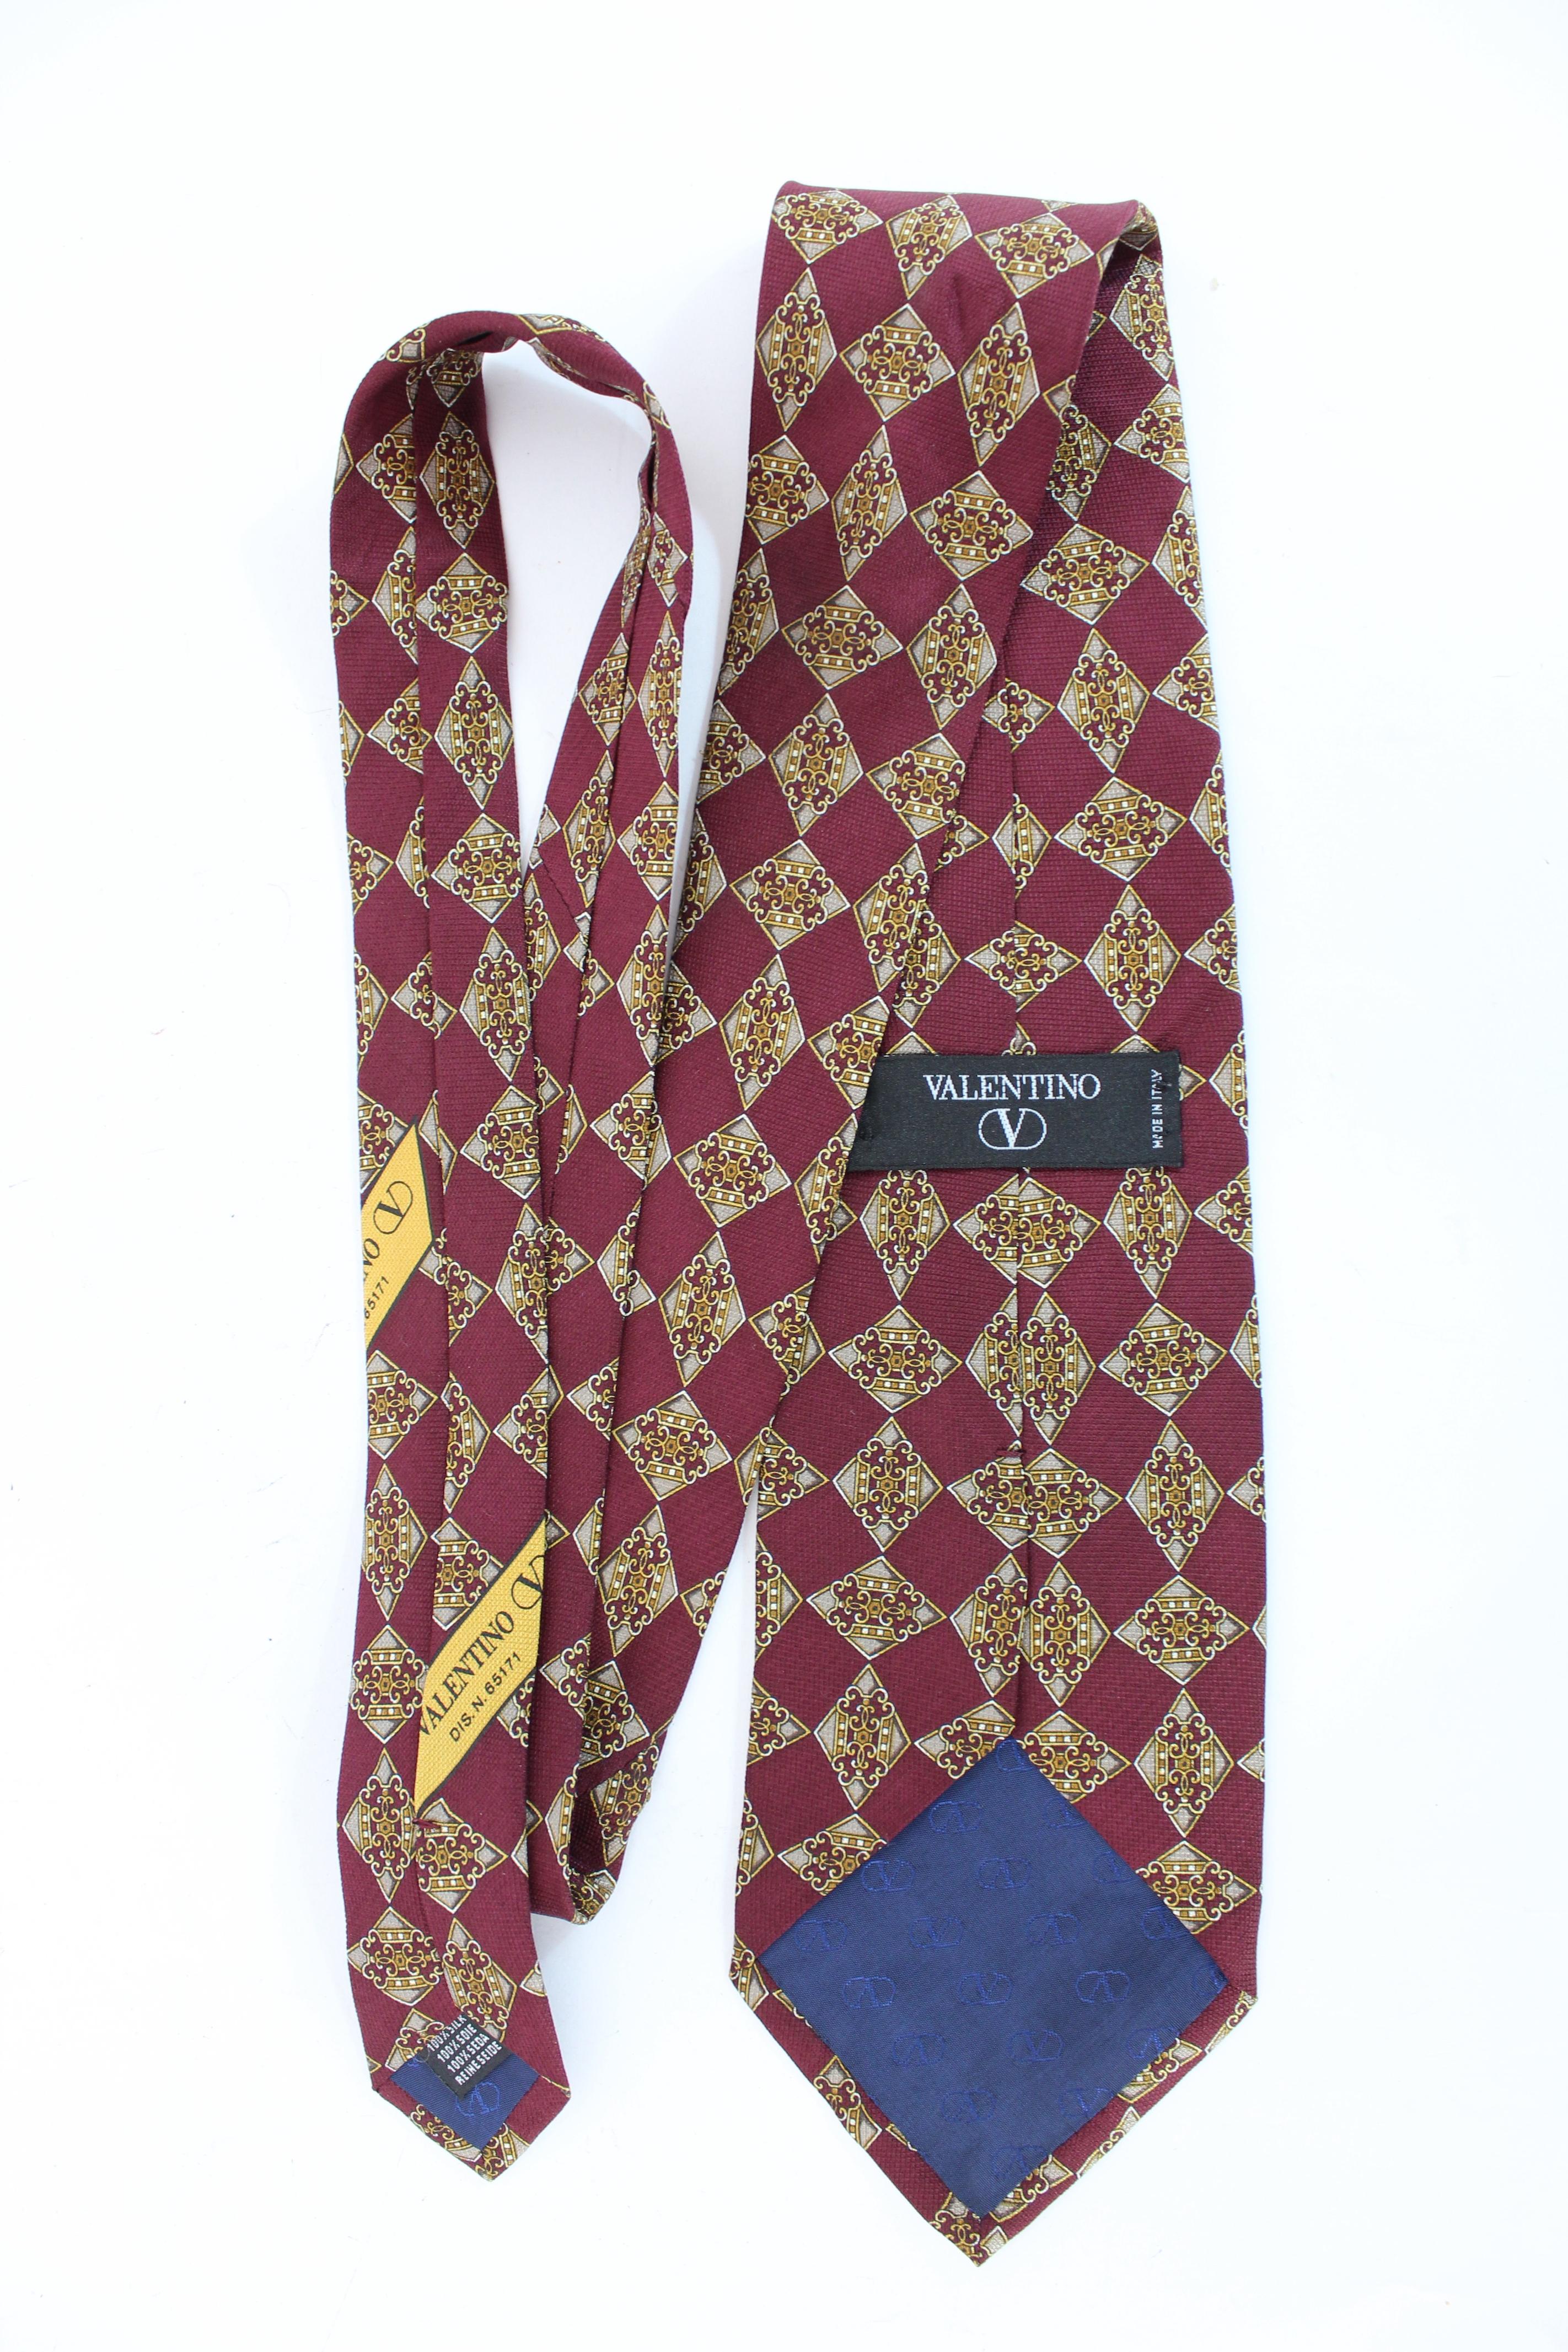 Cravate vintage Valentino des années 90. Cravate classique, couleur bordeaux et or avec motif de losanges. Tissu 100% soie. Fabriquées en Italie.

Condit : Excellent

Article utilisé peu de fois, il reste dans son excellent état. Il n'y a pas de